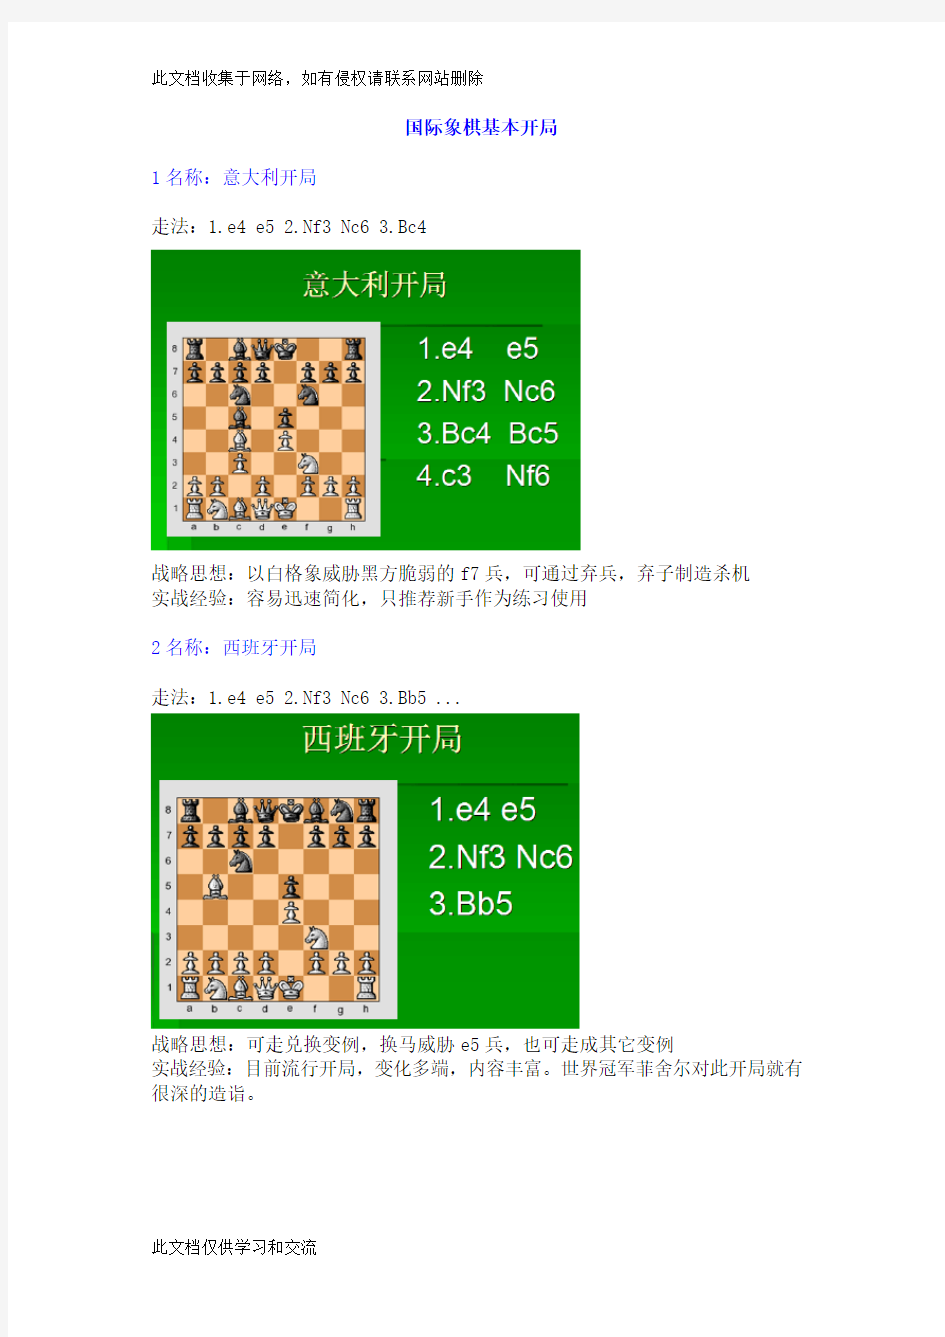 国际象棋基本开局复习进程